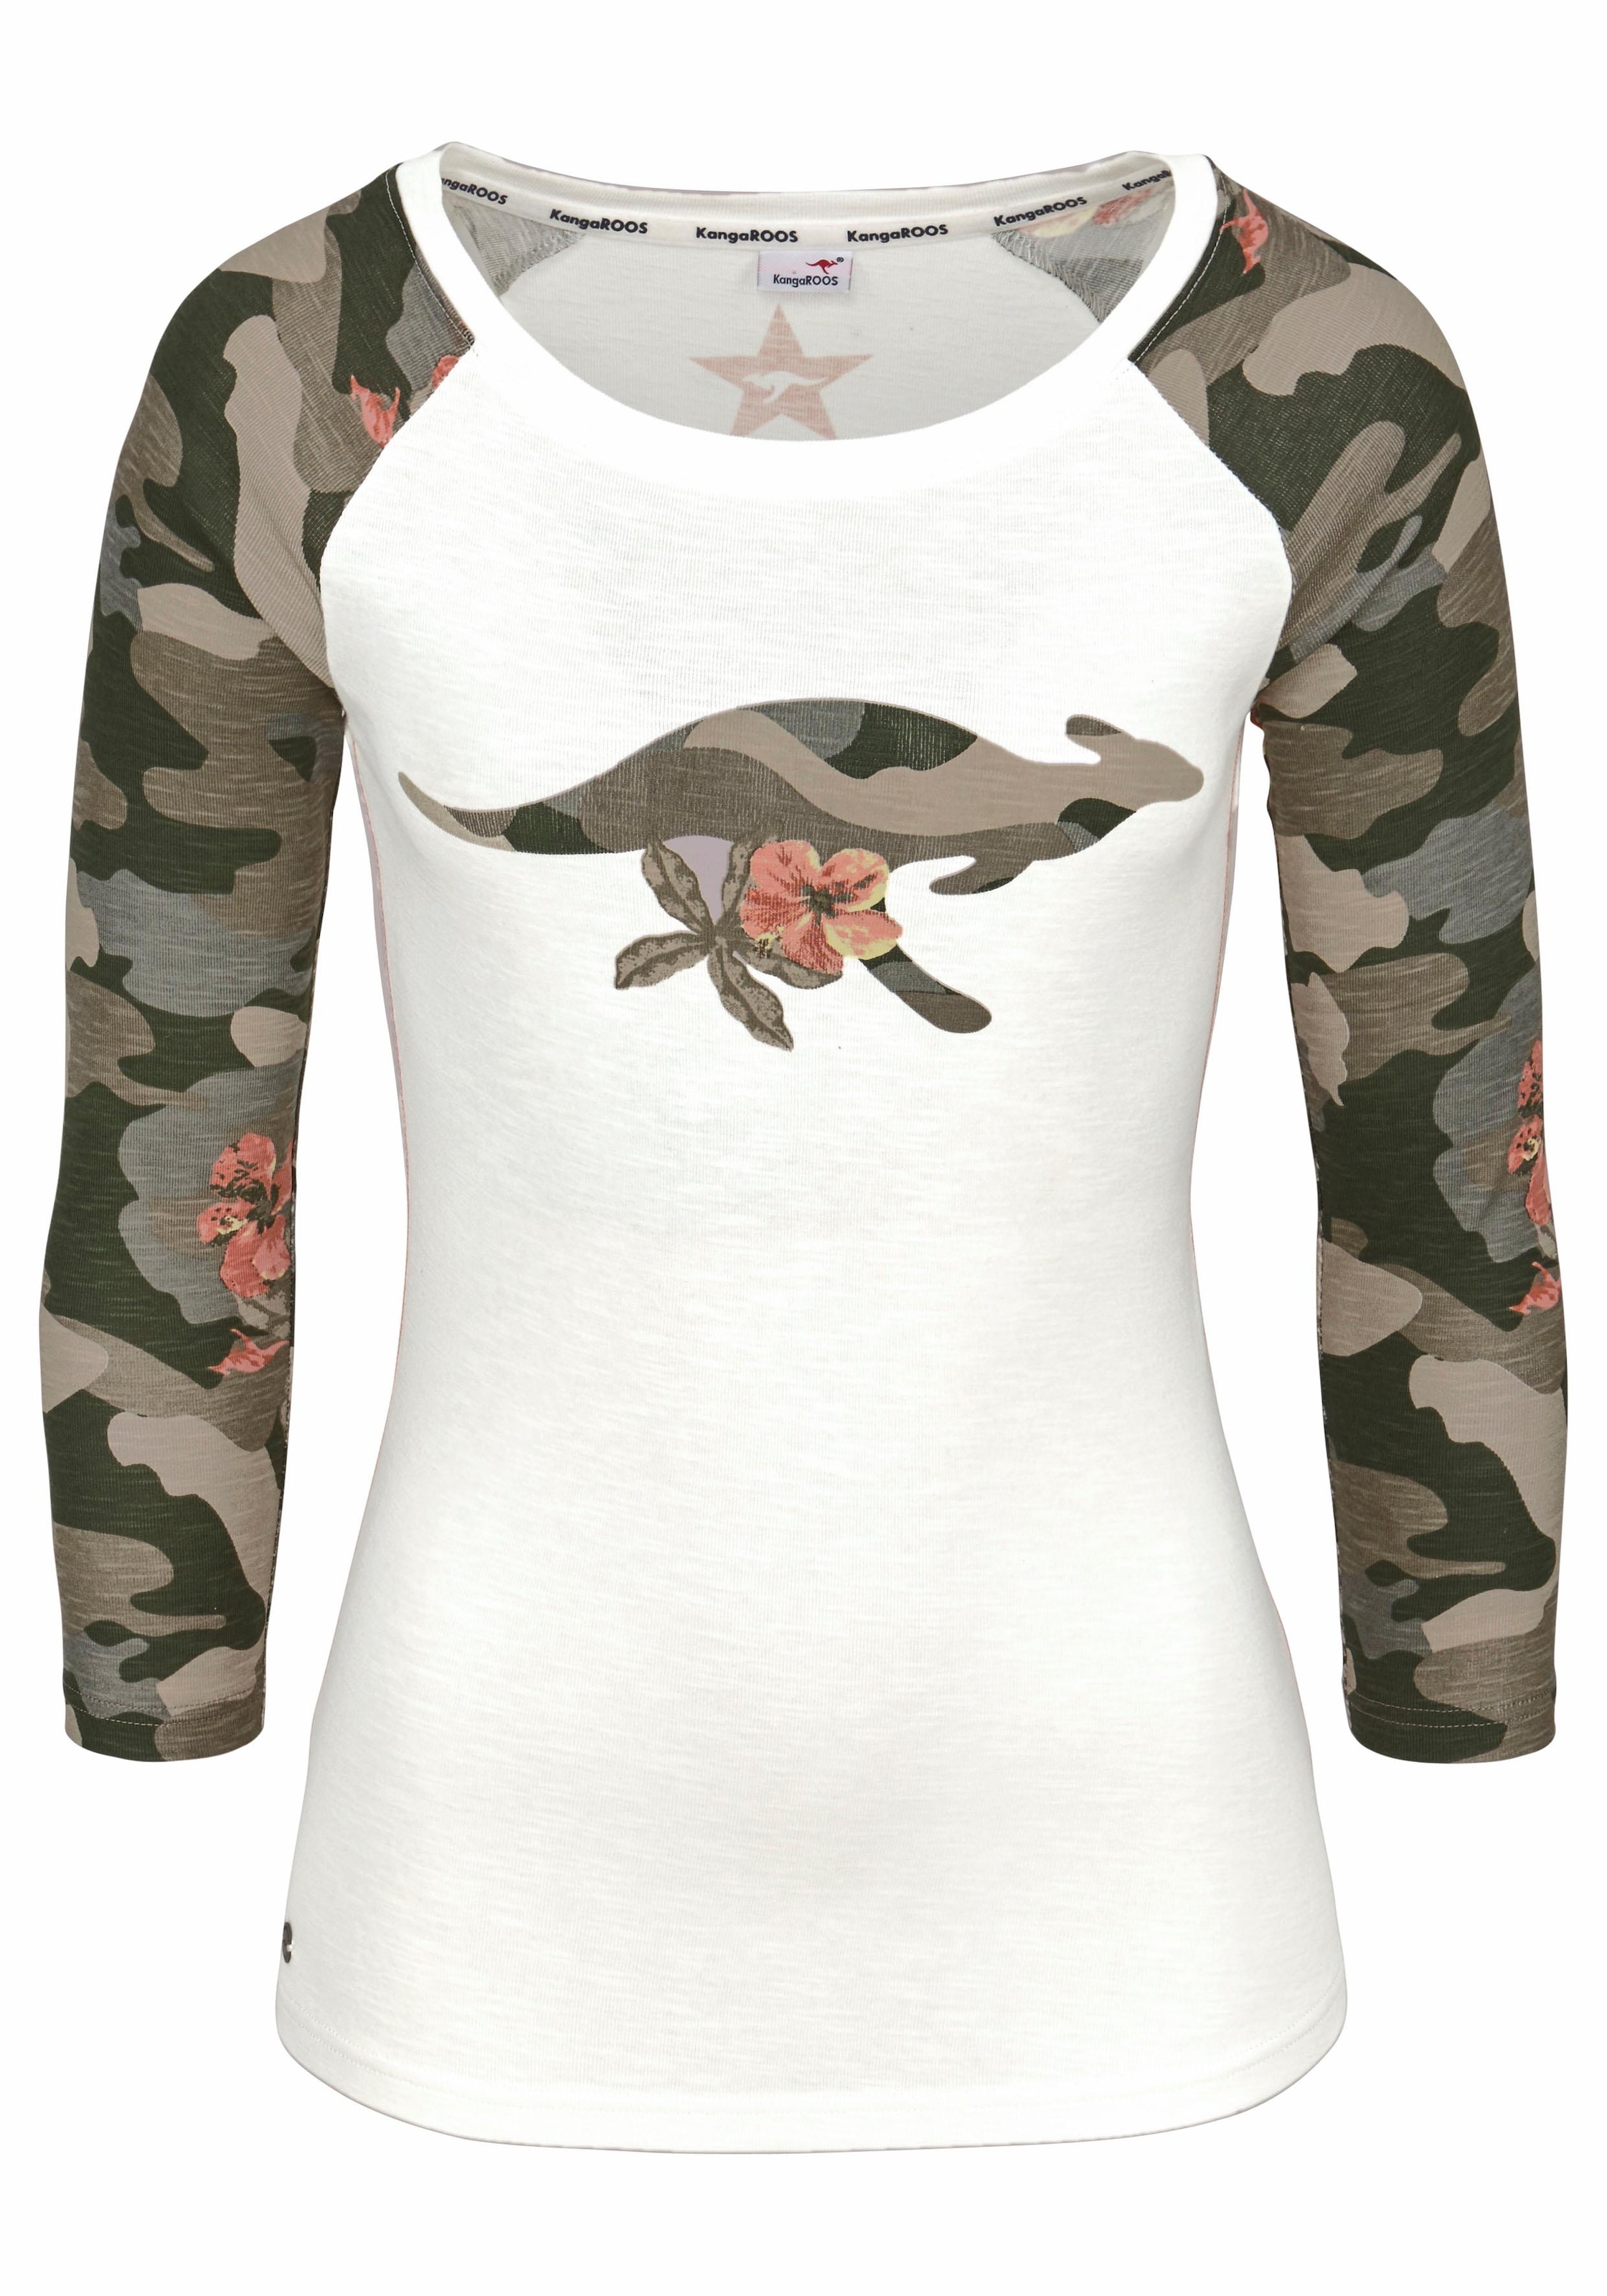 Front-Print online KangaROOS tarnfarbenen mit und Camouflage-Ärmeln 3/4-Arm-Shirt,